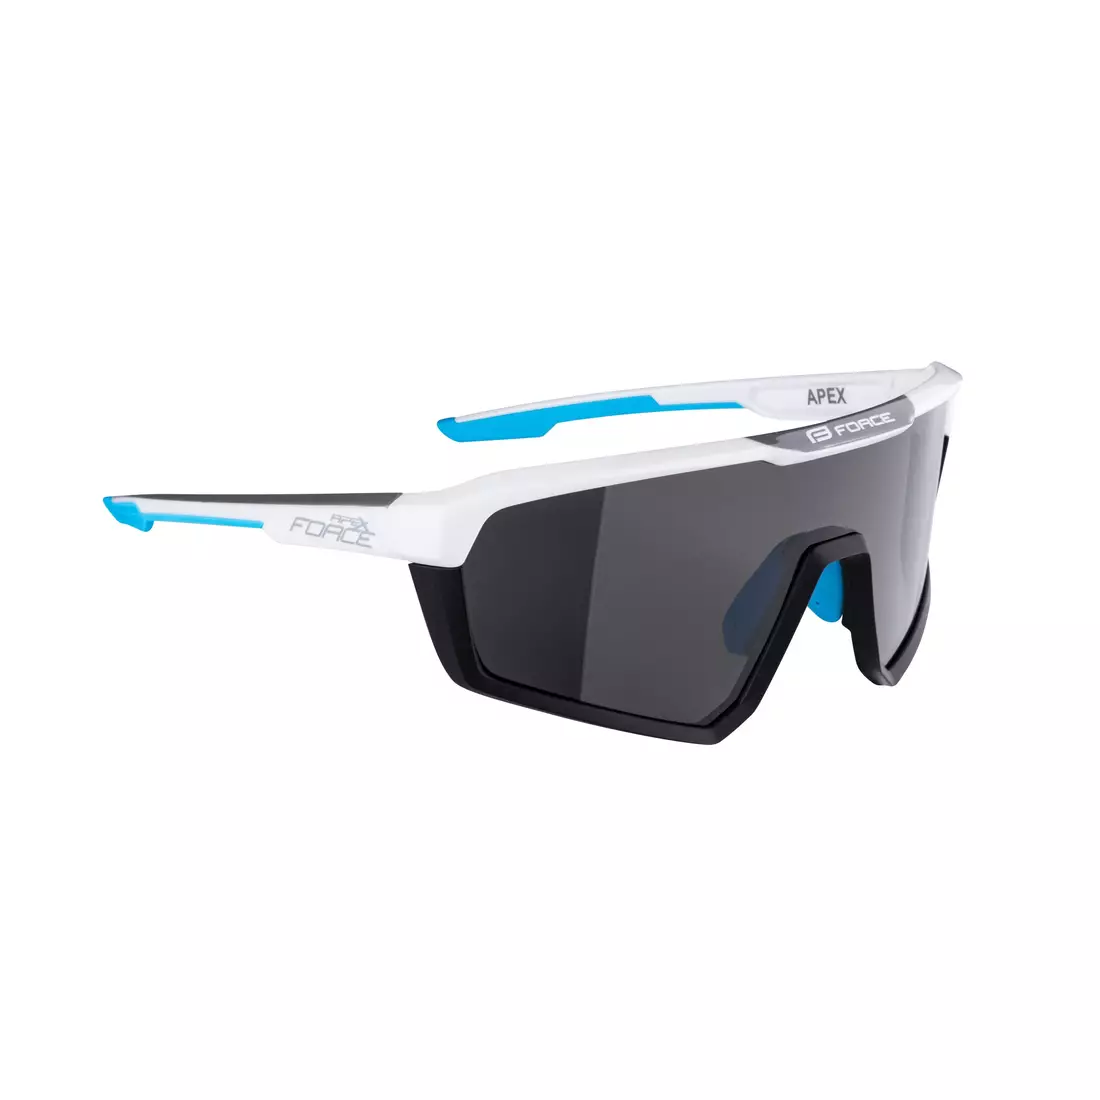 FORCE Fahrrad / Sportbrille APEX, weiß und grau, 910891